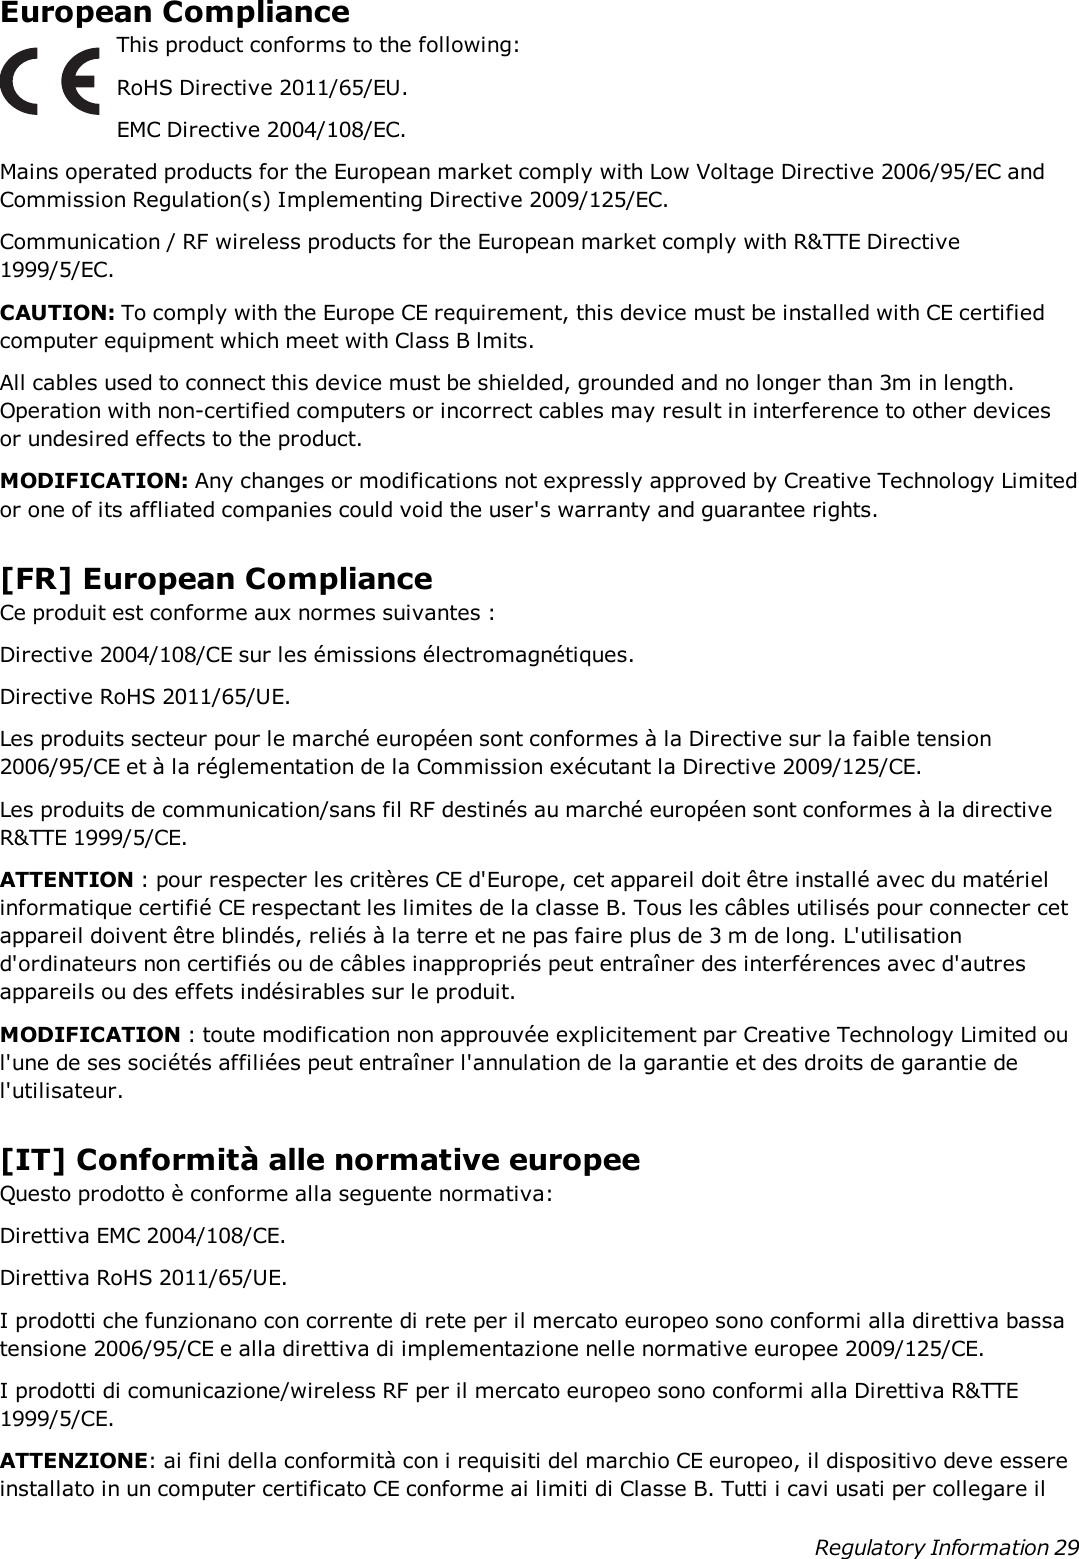 European ComplianceThis product conforms to the following:RoHS Directive 2011/65/EU.EMC Directive 2004/108/EC.Mains operated products for the European market comply with Low Voltage Directive 2006/95/EC andCommission Regulation(s) Implementing Directive 2009/125/EC.Communication / RF wireless products for the European market comply with R&amp;TTE Directive1999/5/EC.CAUTION: To comply with the Europe CE requirement, this device must be installed with CE certifiedcomputer equipment which meet with Class B lmits.All cables used to connect this device must be shielded, grounded and no longer than 3m in length.Operation with non-certified computers or incorrect cables may result in interference to other devicesor undesired effects to the product.MODIFICATION: Any changes or modifications not expressly approved by Creative Technology Limitedor one of its affliated companies could void the user&apos;s warranty and guarantee rights.[FR] European ComplianceCe produit est conforme aux normes suivantes :Directive 2004/108/CE sur les émissions électromagnétiques.Directive RoHS 2011/65/UE.Les produits secteur pour le marché européen sont conformes à la Directive sur la faible tension2006/95/CE et à la réglementation de la Commission exécutant la Directive 2009/125/CE.Les produits de communication/sans fil RF destinés au marché européen sont conformes à la directiveR&amp;TTE 1999/5/CE.ATTENTION : pour respecter les critères CE d&apos;Europe, cet appareil doit être installé avec du matérielinformatique certifié CE respectant les limites de la classe B. Tous les câbles utilisés pour connecter cetappareil doivent être blindés, reliés à la terre et ne pas faire plus de 3 m de long. L&apos;utilisationd&apos;ordinateurs non certifiés ou de câbles inappropriés peut entraîner des interférences avec d&apos;autresappareils ou des effets indésirables sur le produit.MODIFICATION : toute modification non approuvée explicitement par Creative Technology Limited oul&apos;une de ses sociétés affiliées peut entraîner l&apos;annulation de la garantie et des droits de garantie del&apos;utilisateur.[IT] Conformità alle normative europeeQuesto prodotto è conforme alla seguente normativa:Direttiva EMC 2004/108/CE.Direttiva RoHS 2011/65/UE.I prodotti che funzionano con corrente di rete per il mercato europeo sono conformi alla direttiva bassatensione 2006/95/CE e alla direttiva di implementazione nelle normative europee 2009/125/CE.I prodotti di comunicazione/wireless RF per il mercato europeo sono conformi alla Direttiva R&amp;TTE1999/5/CE.ATTENZIONE: ai fini della conformità con i requisiti del marchio CE europeo, il dispositivo deve essereinstallato in un computer certificato CE conforme ai limiti di Classe B. Tutti i cavi usati per collegare ilRegulatory Information 29